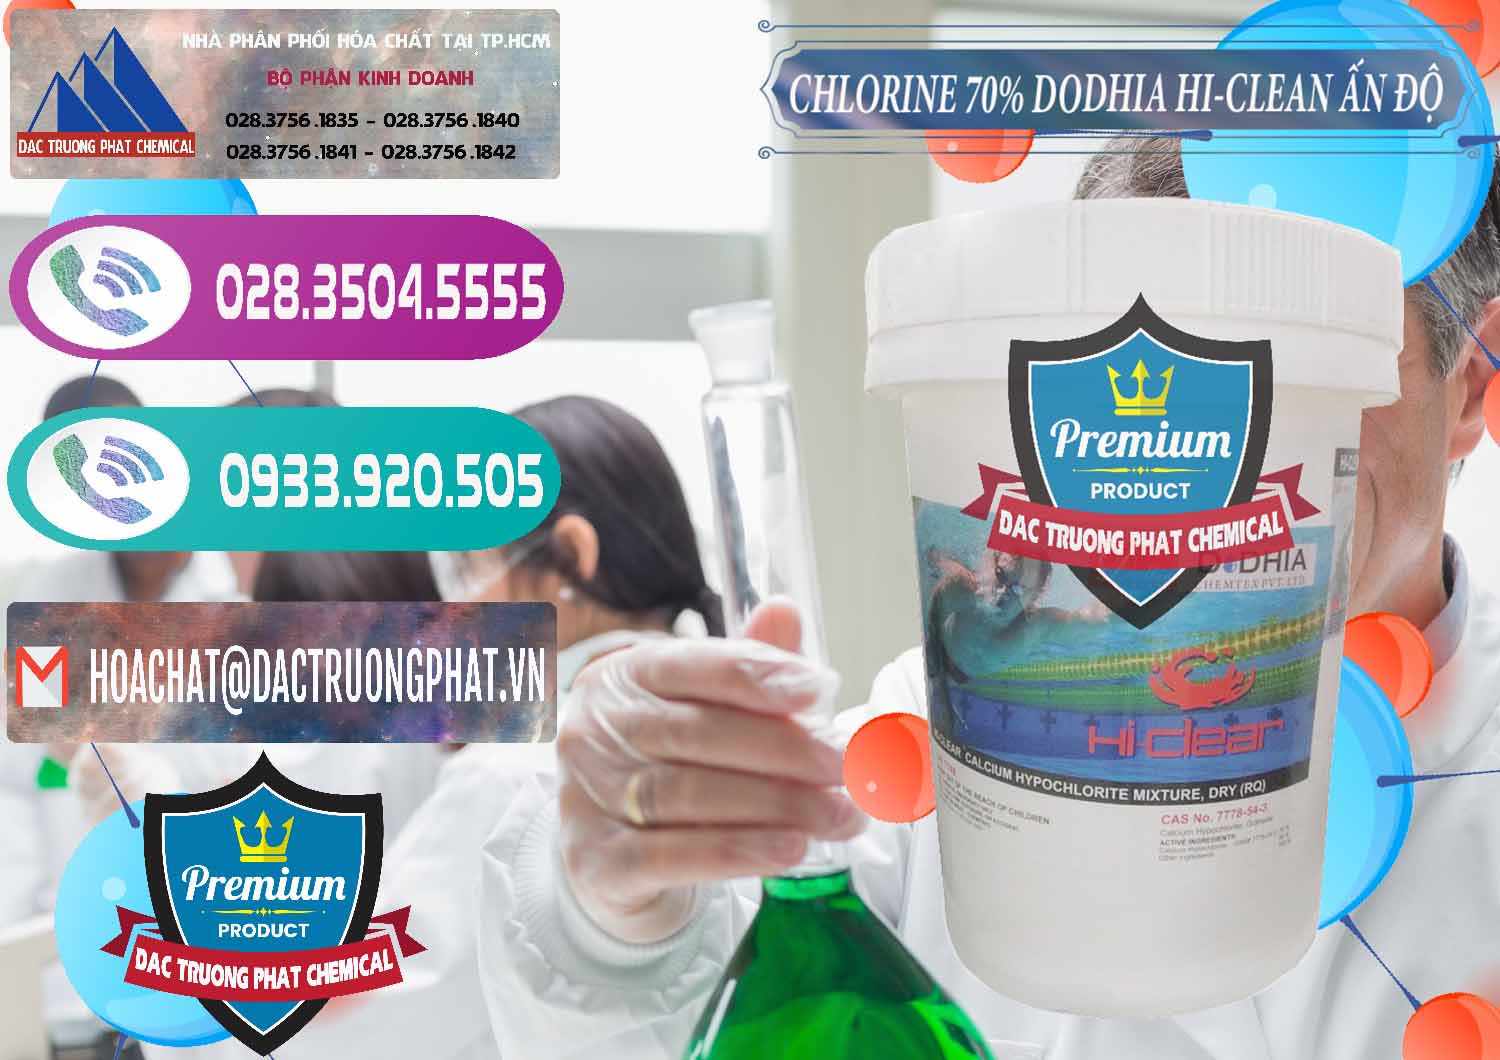 Công ty kinh doanh ( bán ) Chlorine – Clorin 70% Dodhia Hi-Clean Ấn Độ India - 0214 - Cty kinh doanh - phân phối hóa chất tại TP.HCM - hoachatxulynuoc.com